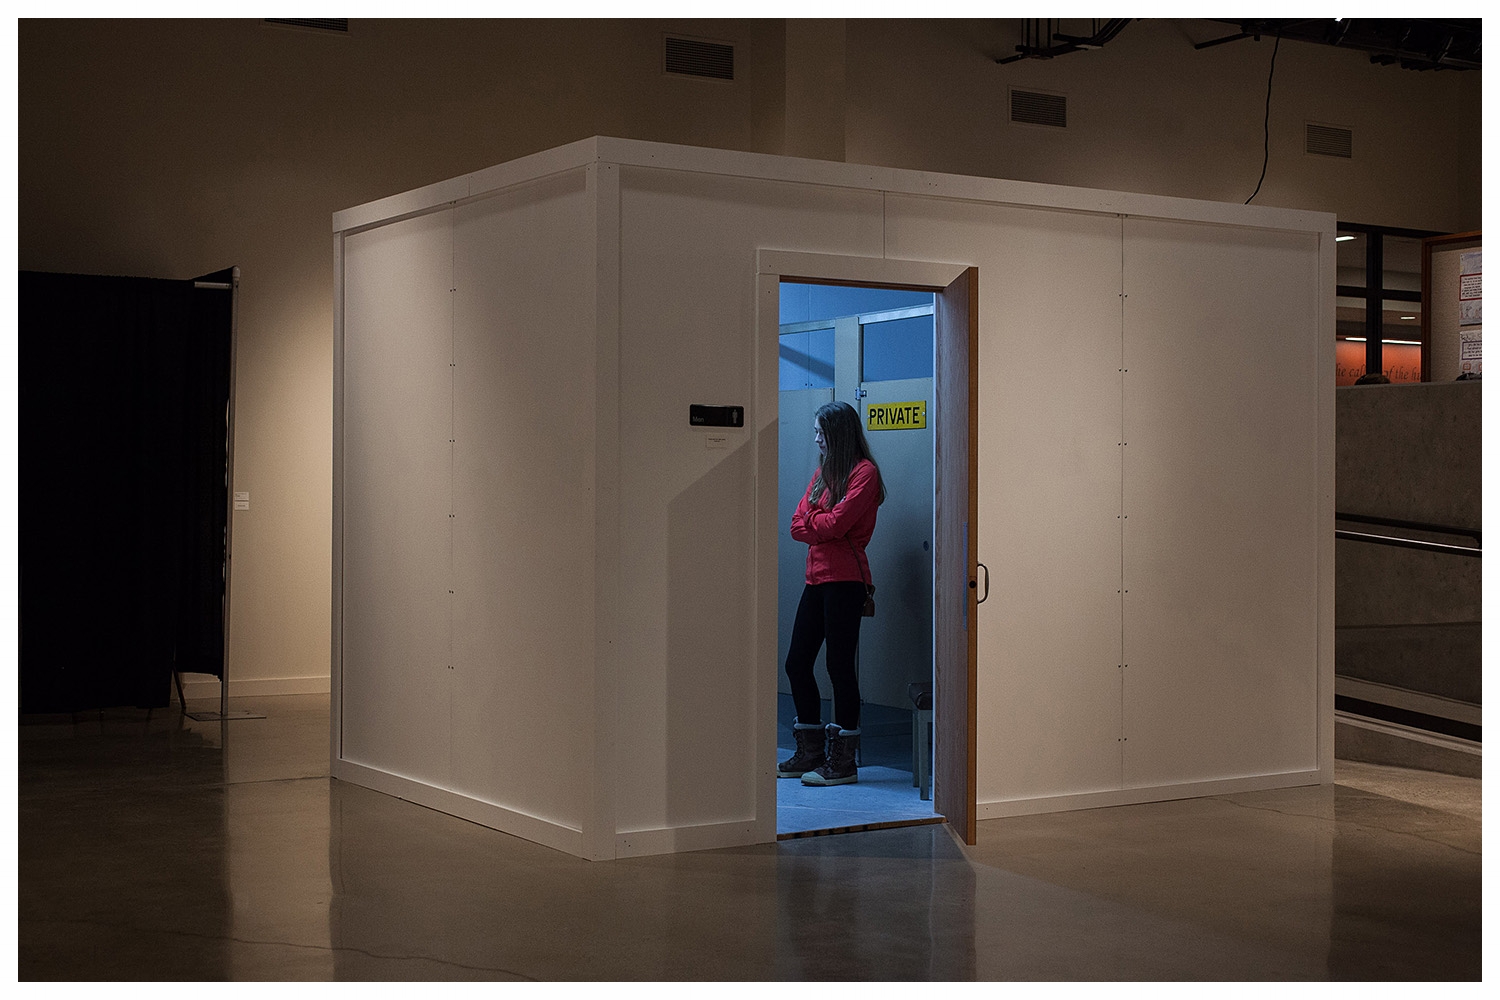  The Bathroom, 2014 (Fine Arts Gallery, UW-Parkside) 